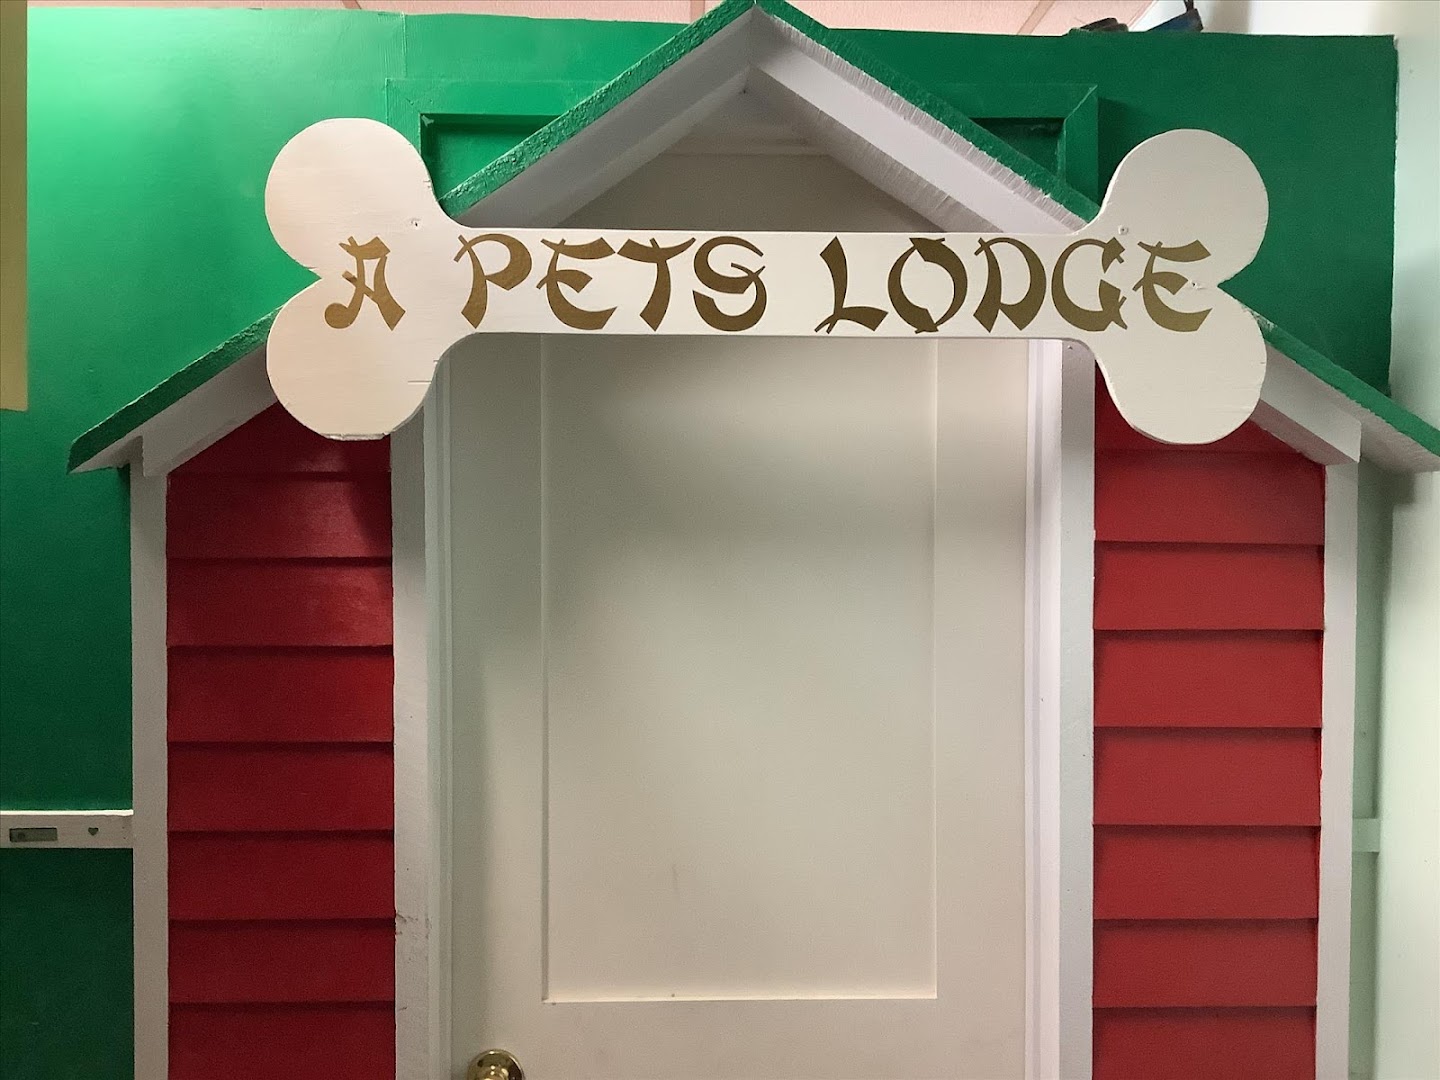 A Pet’s Lodge